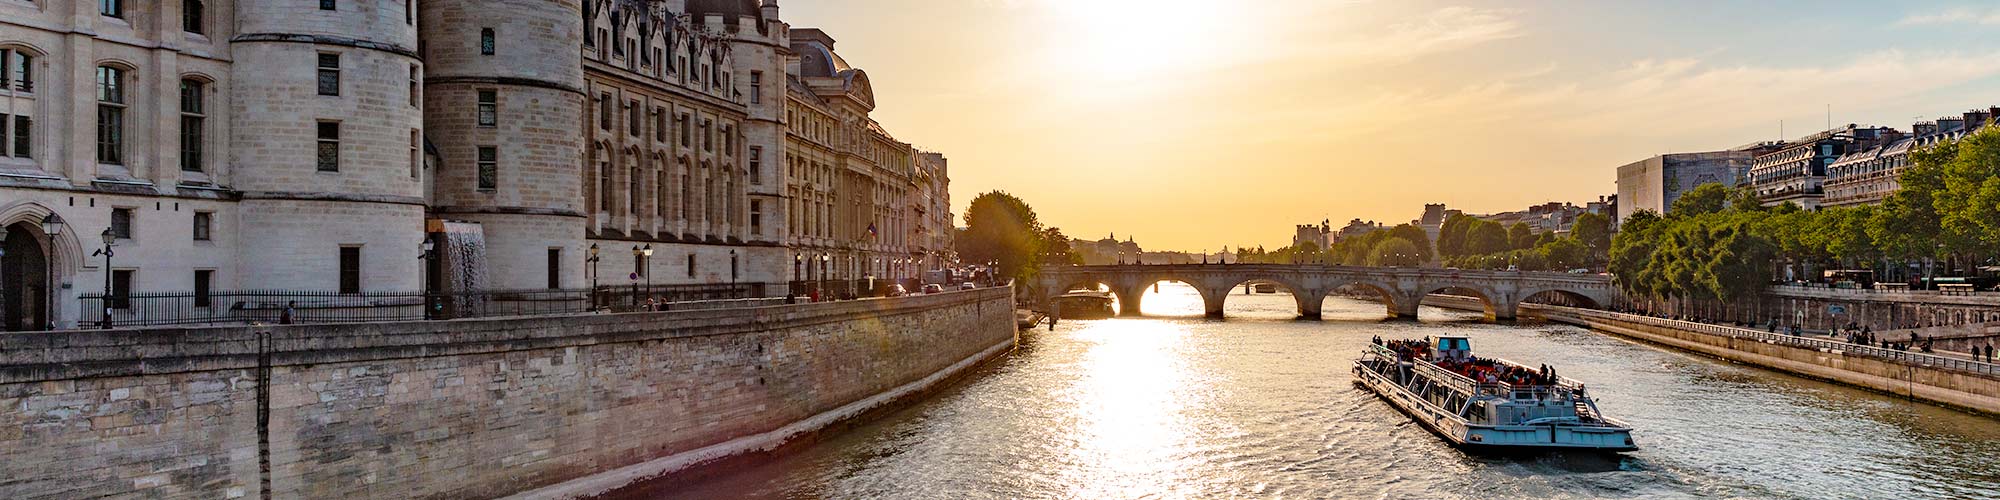 Seine river cruise & mealbox